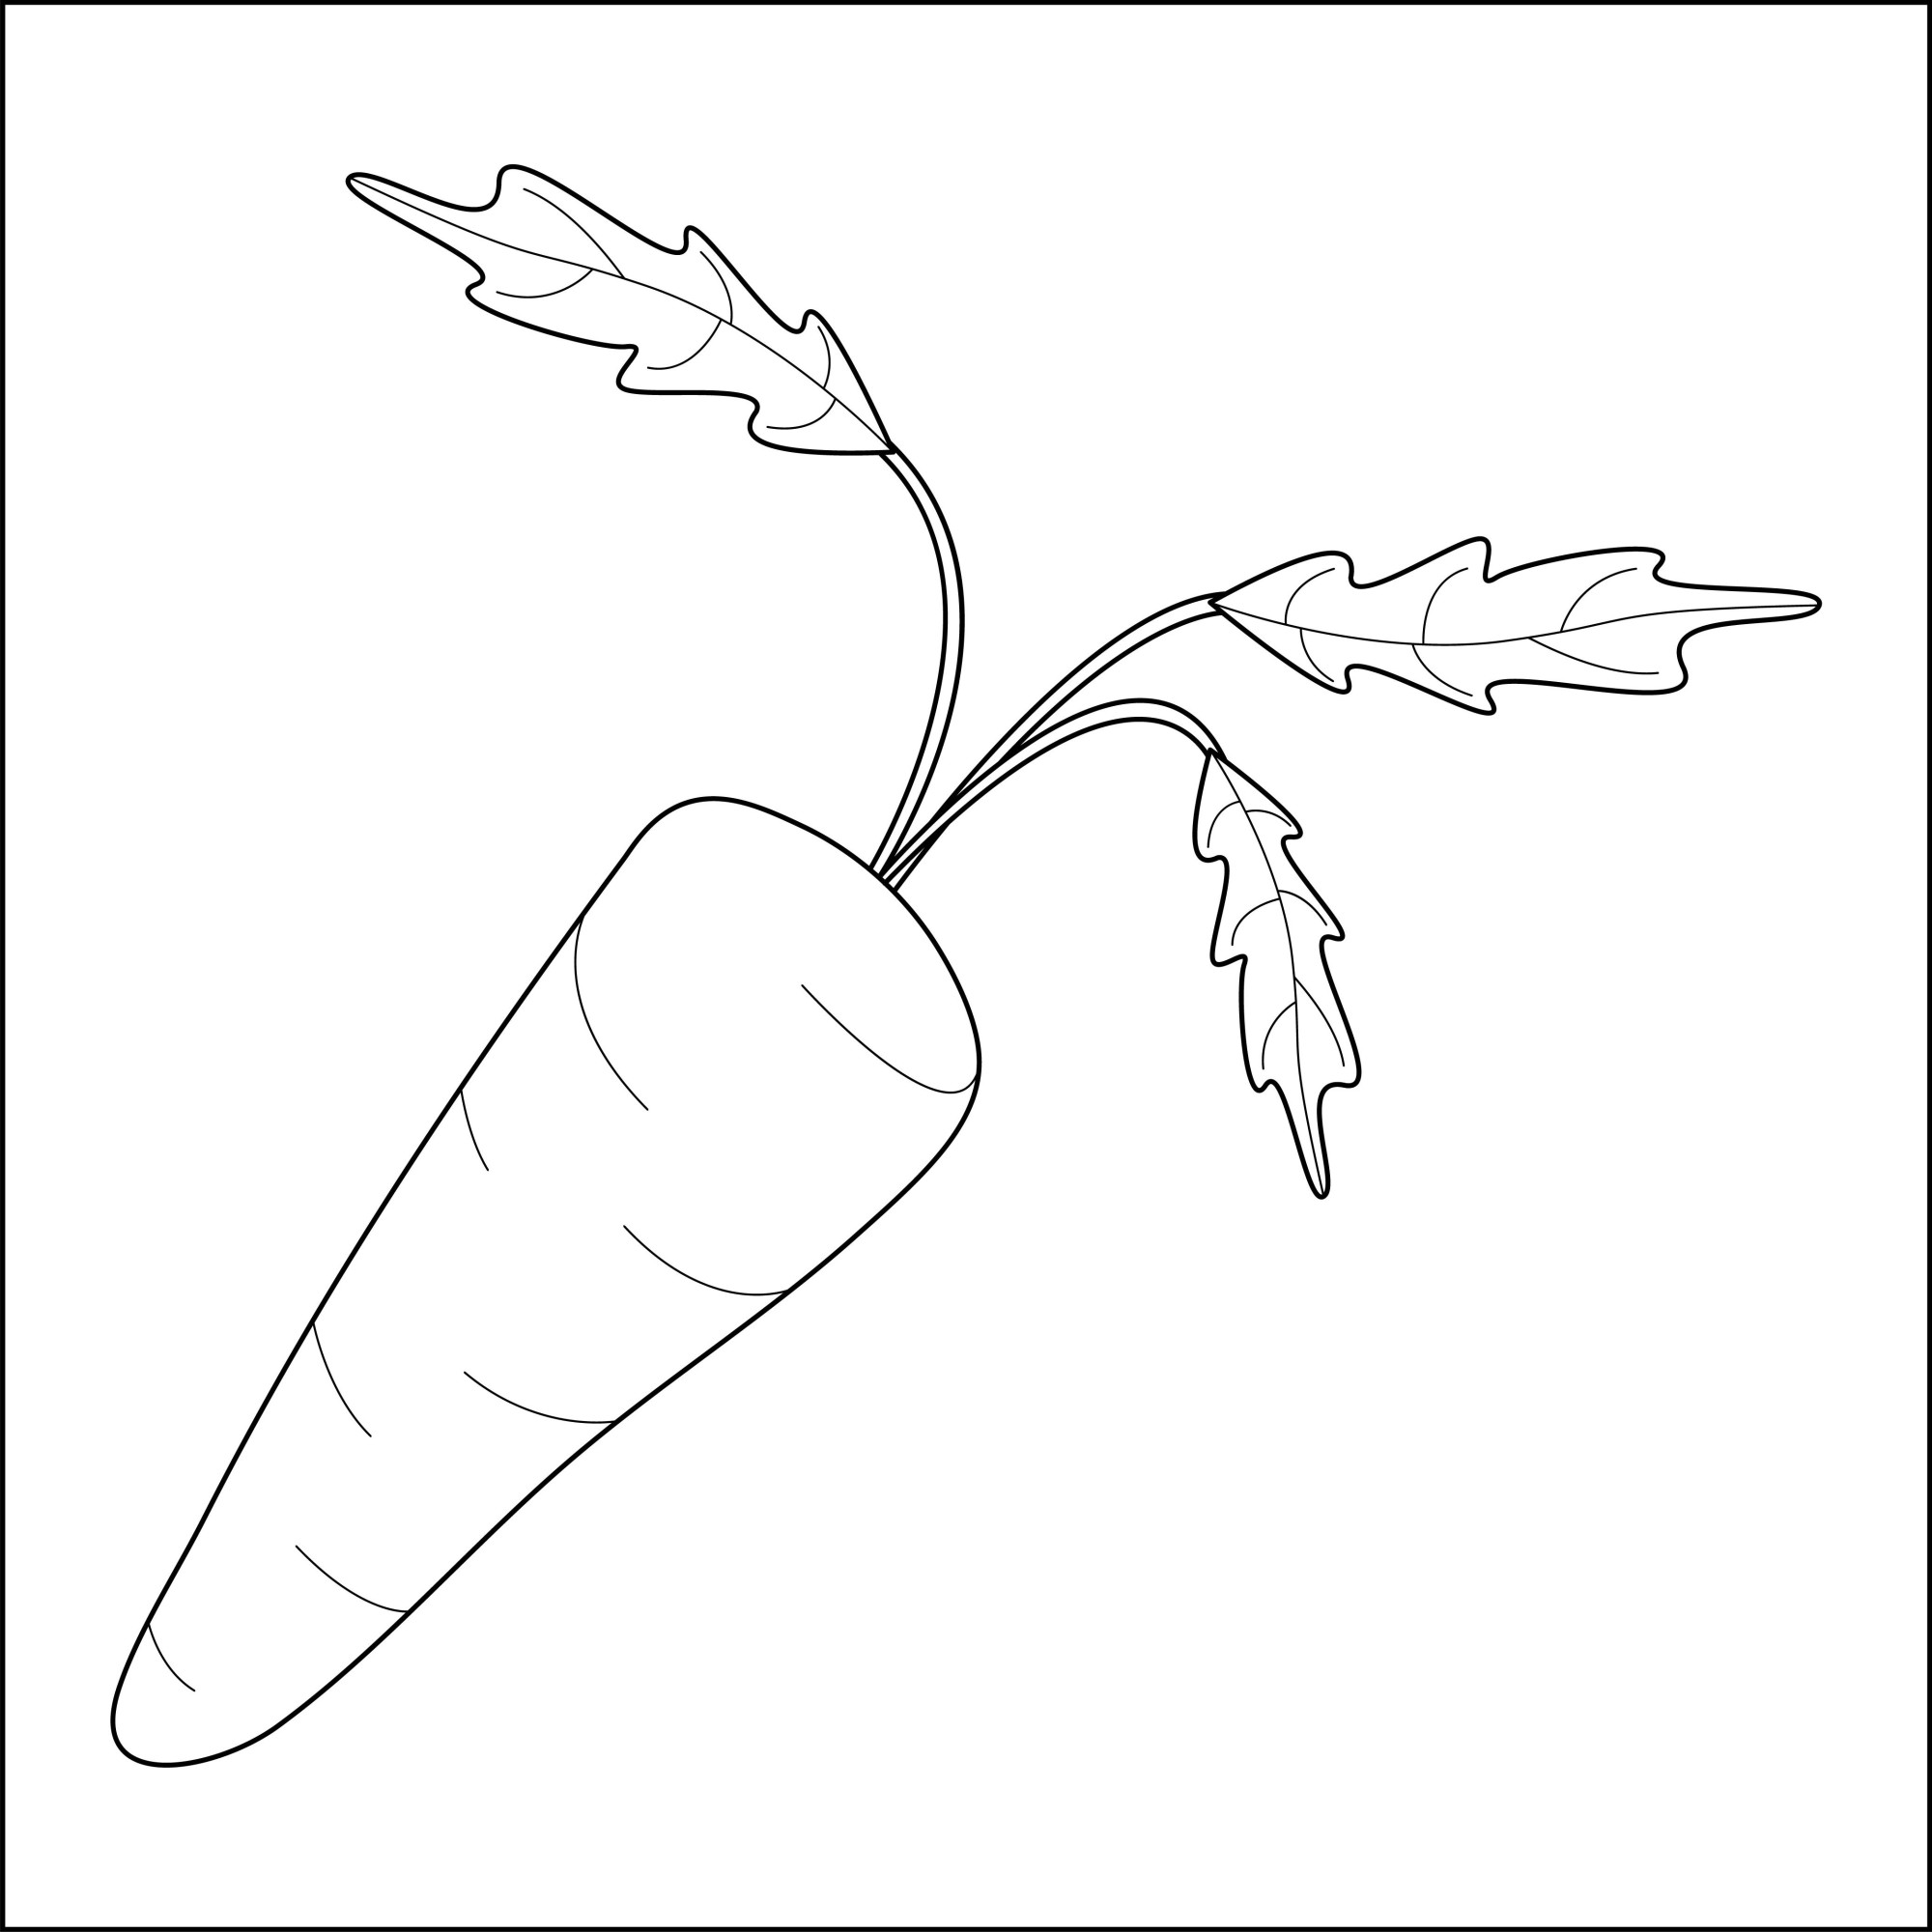 Раскраска для детей: полезная морковь источник бета-каротина